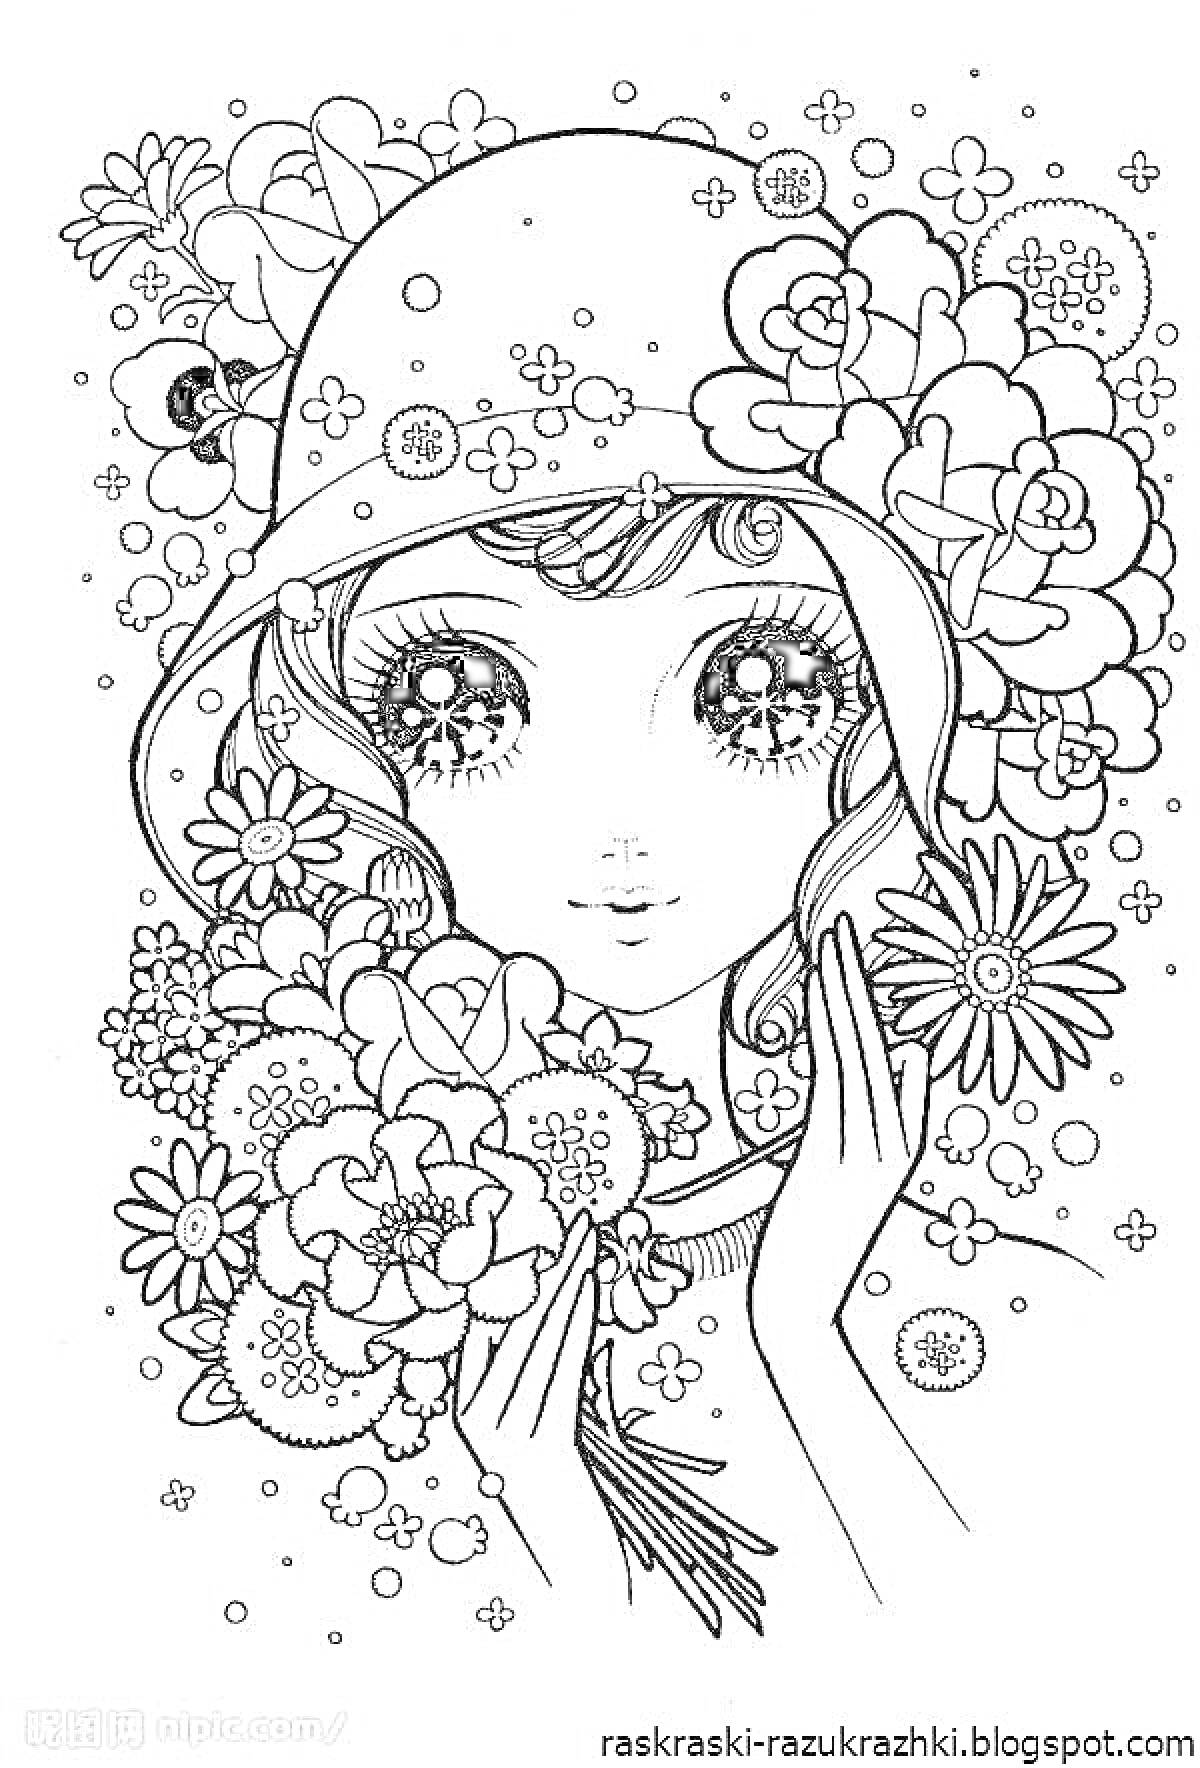 Раскраска Девушка в шляпе с цветами, вокруг нее много цветов и украшений